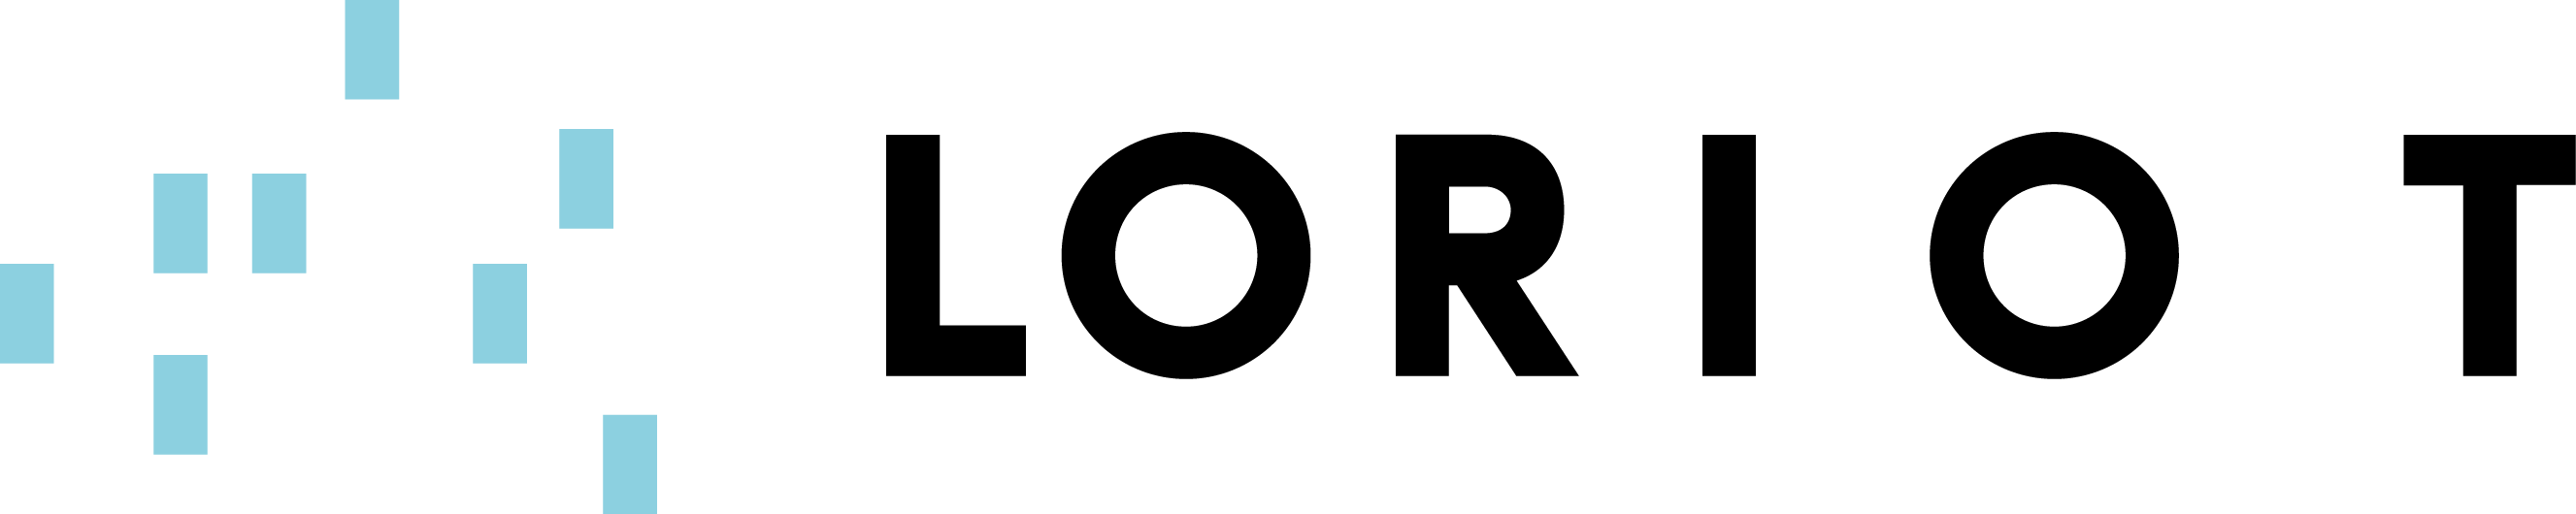 loriot logo